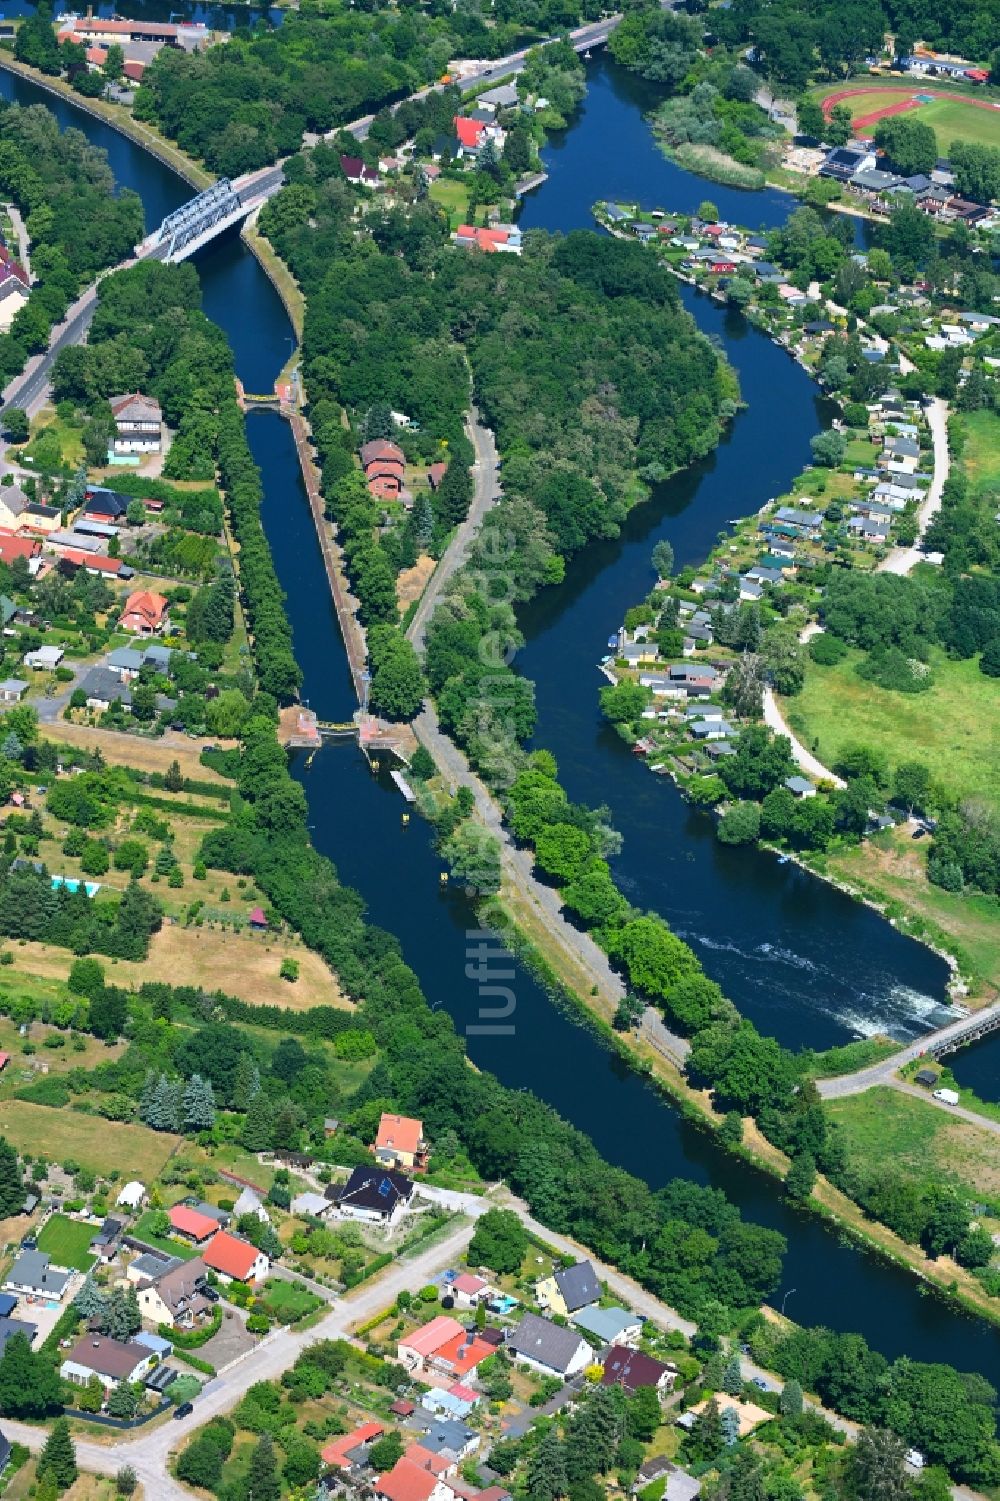 Rathenow aus der Vogelperspektive: Insel am Ufer des Flußverlaufes der Havel in Rathenow im Bundesland Brandenburg, Deutschland